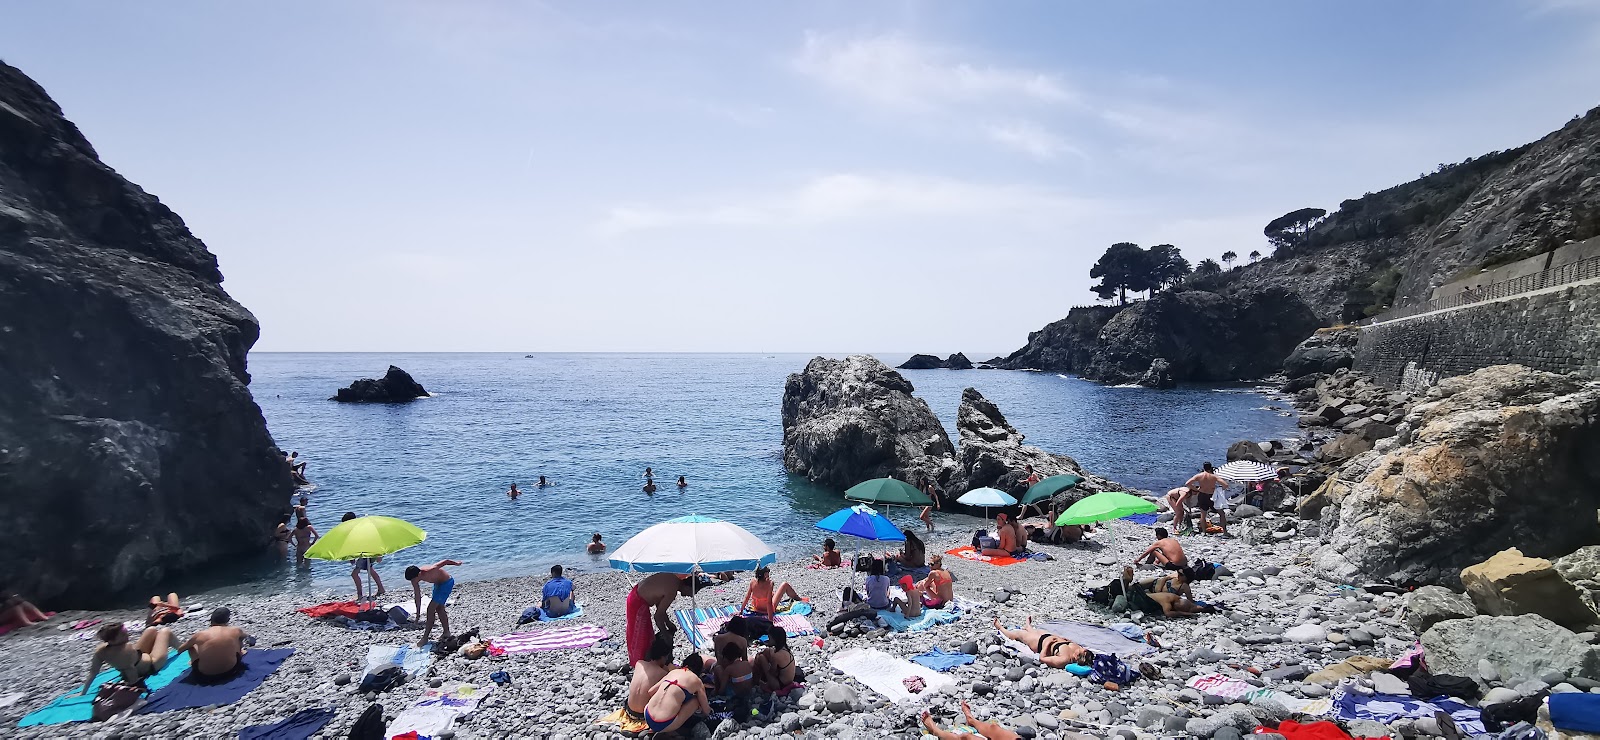 La Ciclopedonale Maremonti Spiaggia的照片 带有蓝色纯水表面